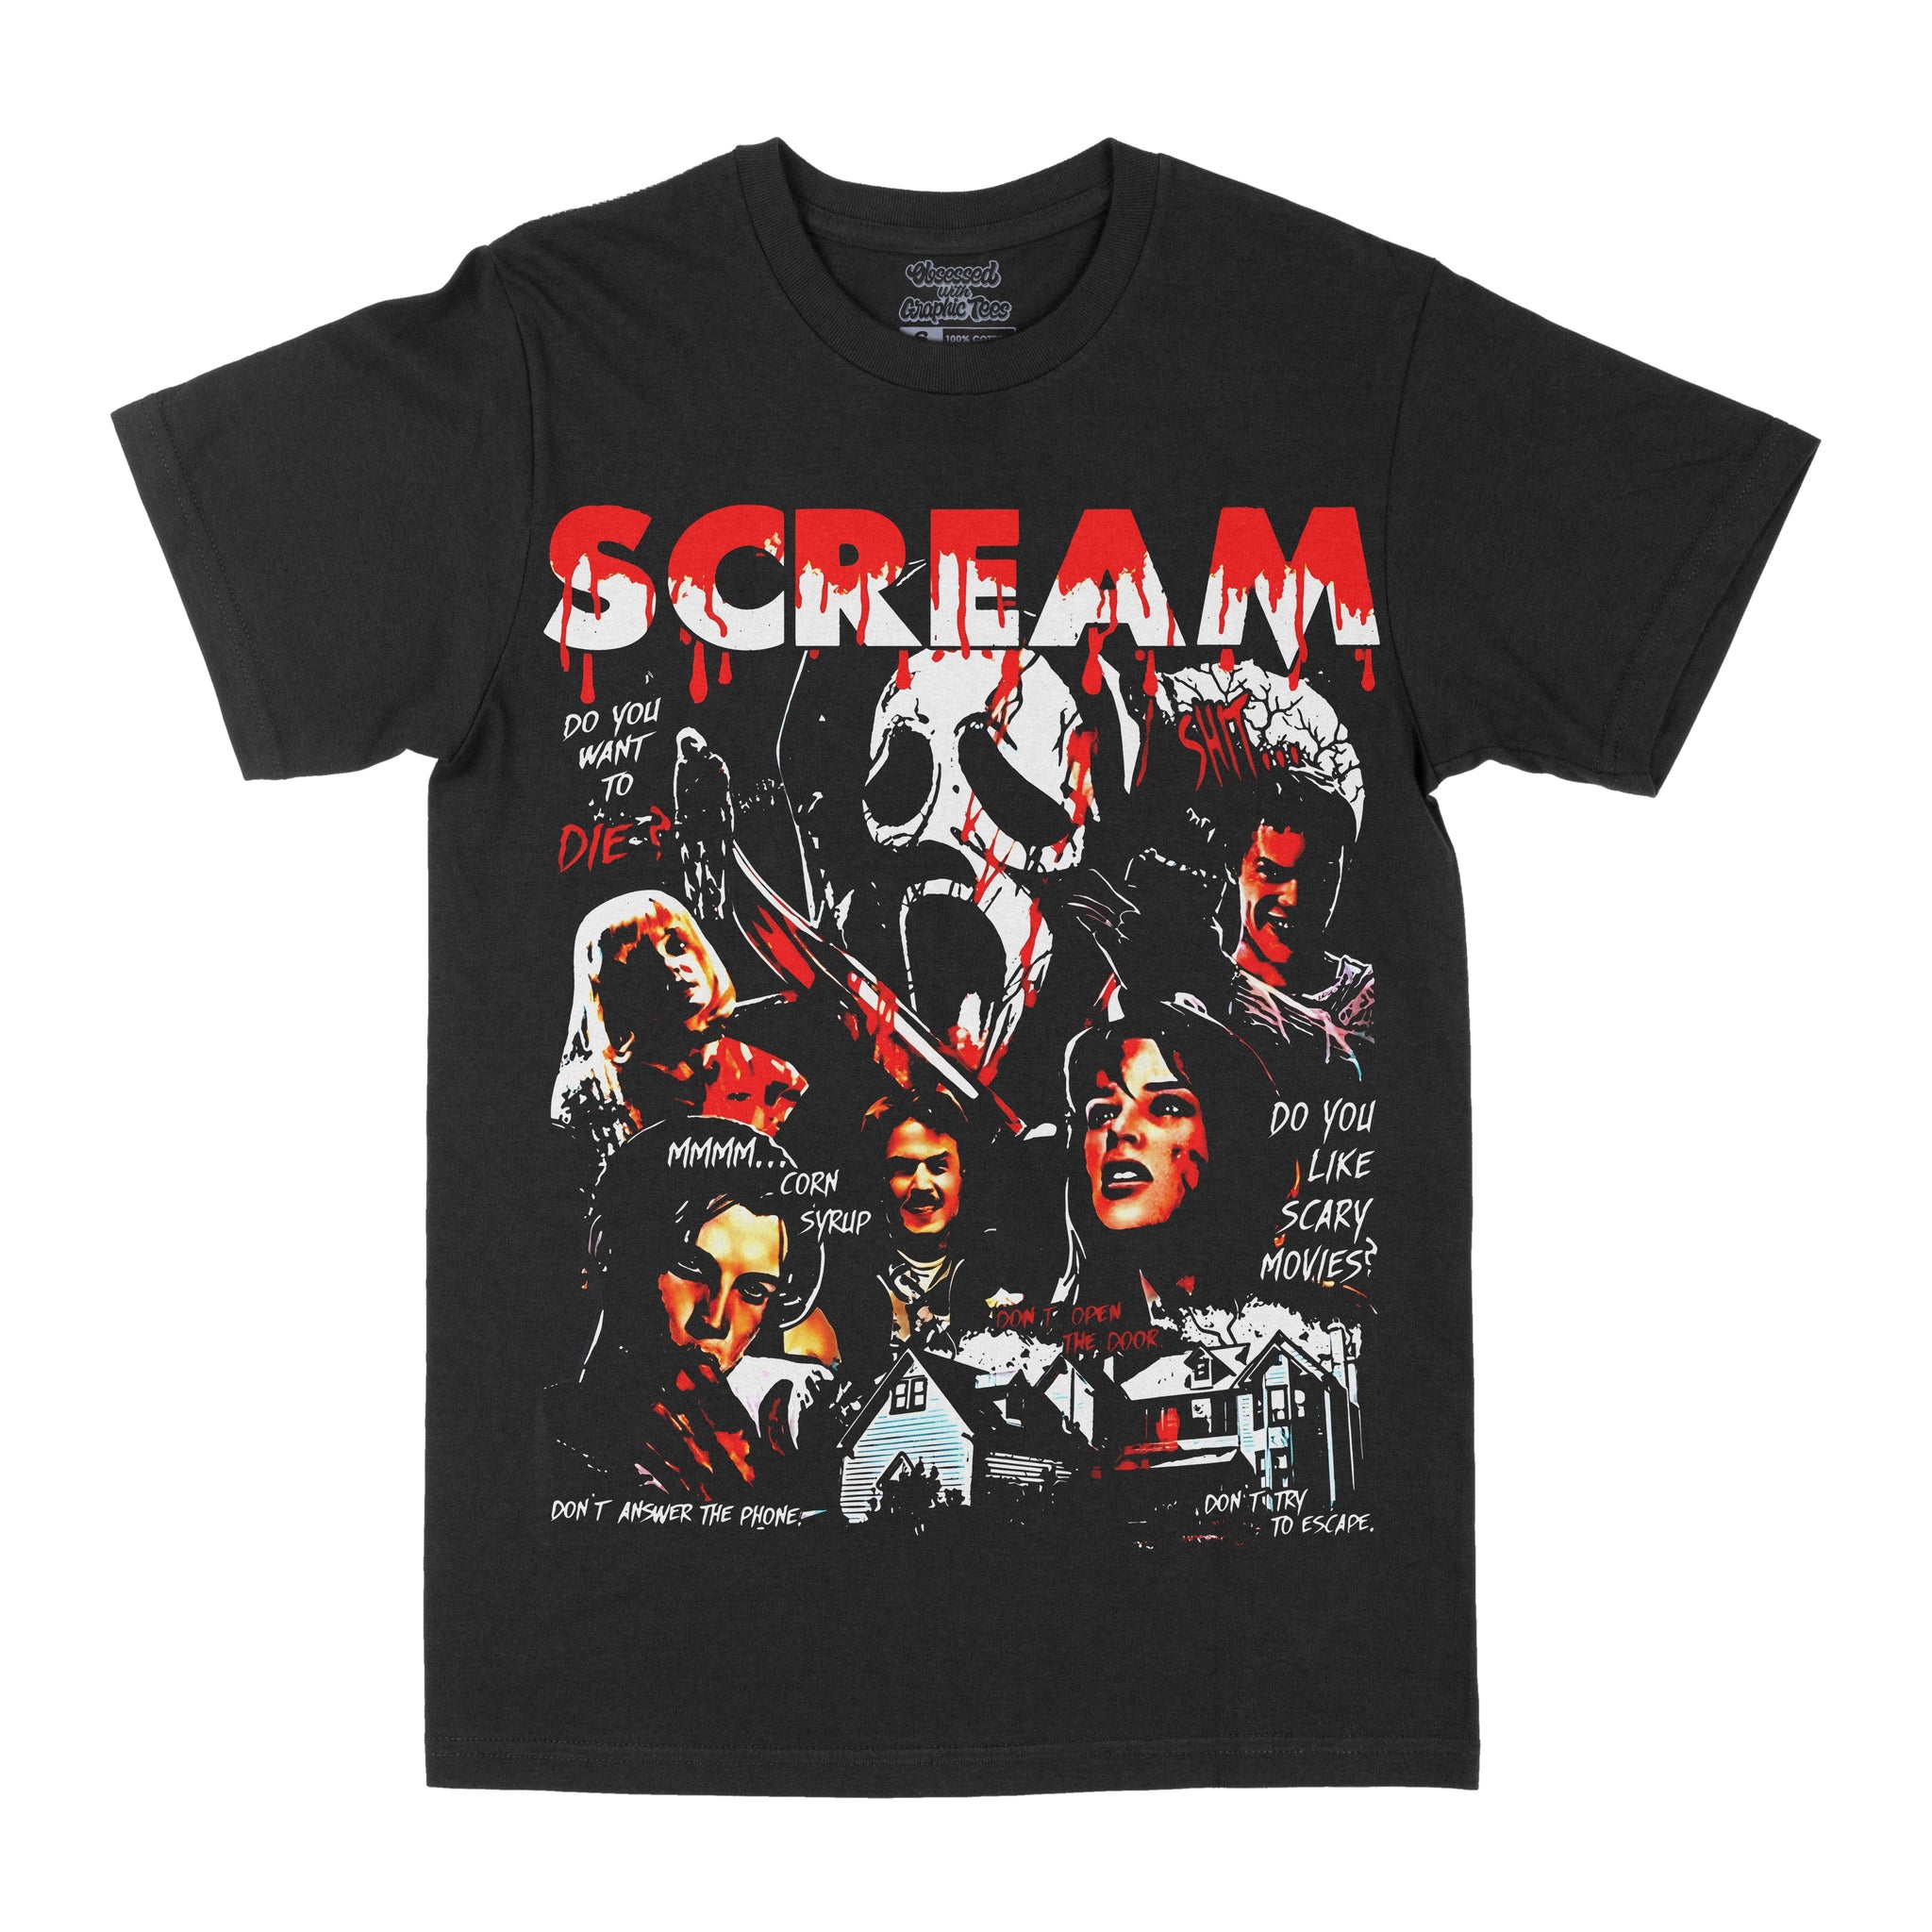 Scream Horror Graphic Tee